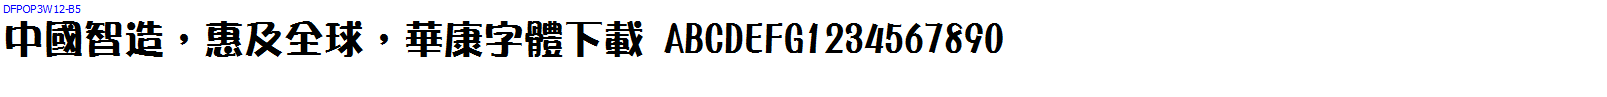 華康字體DFPOP3W12-B5.ttc